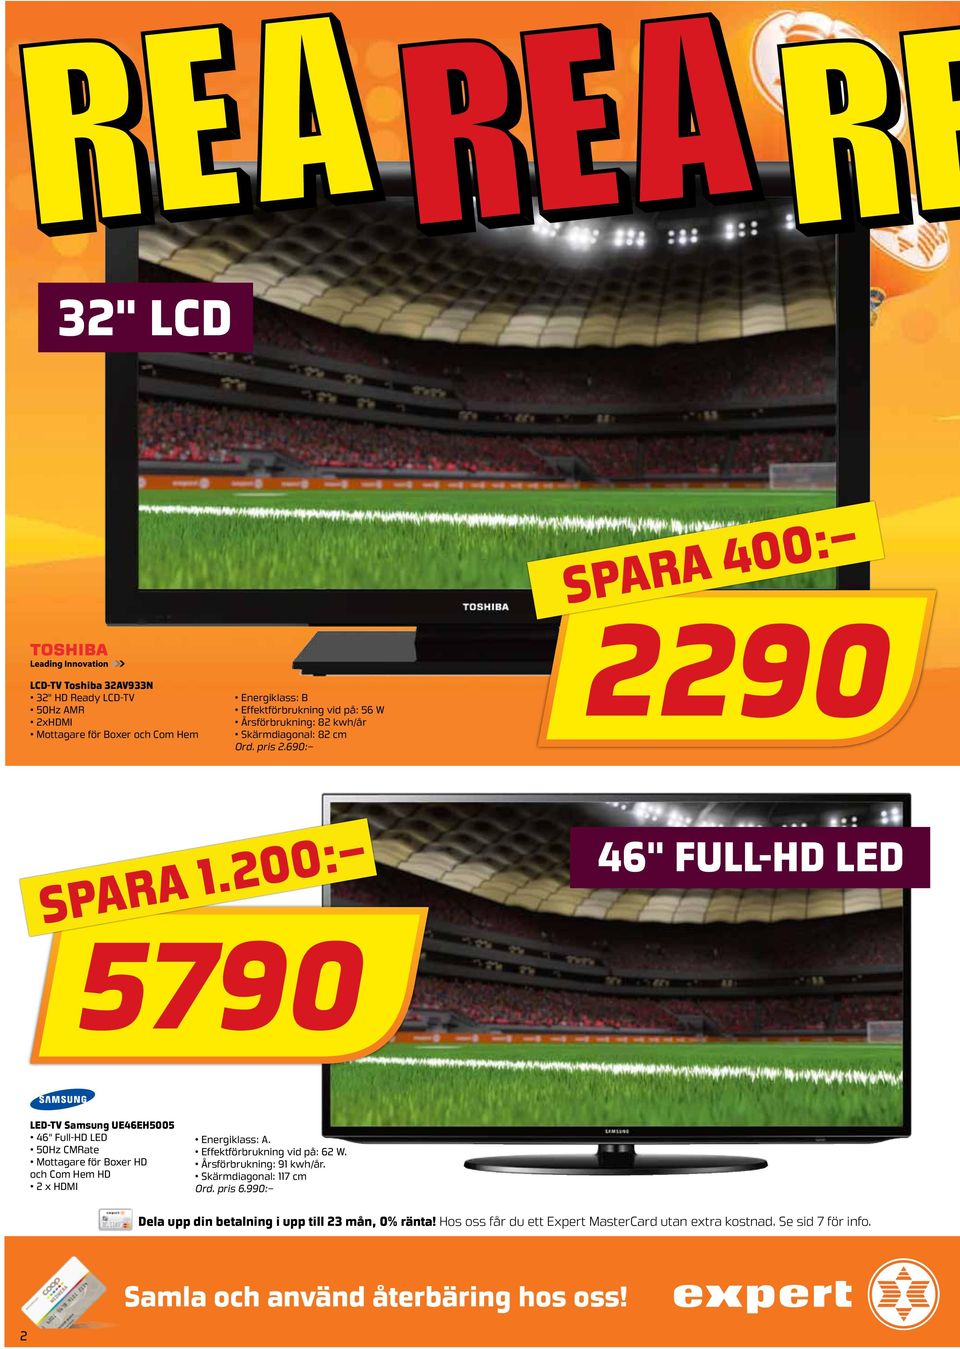 200: 5790 46" full-hd led LED-TV Samsung UE46EH5005 46" Full-HD LED 50Hz CMRate Mottagare för Boxer HD och Com Hem HD 2 x HDMI Energiklass: A.